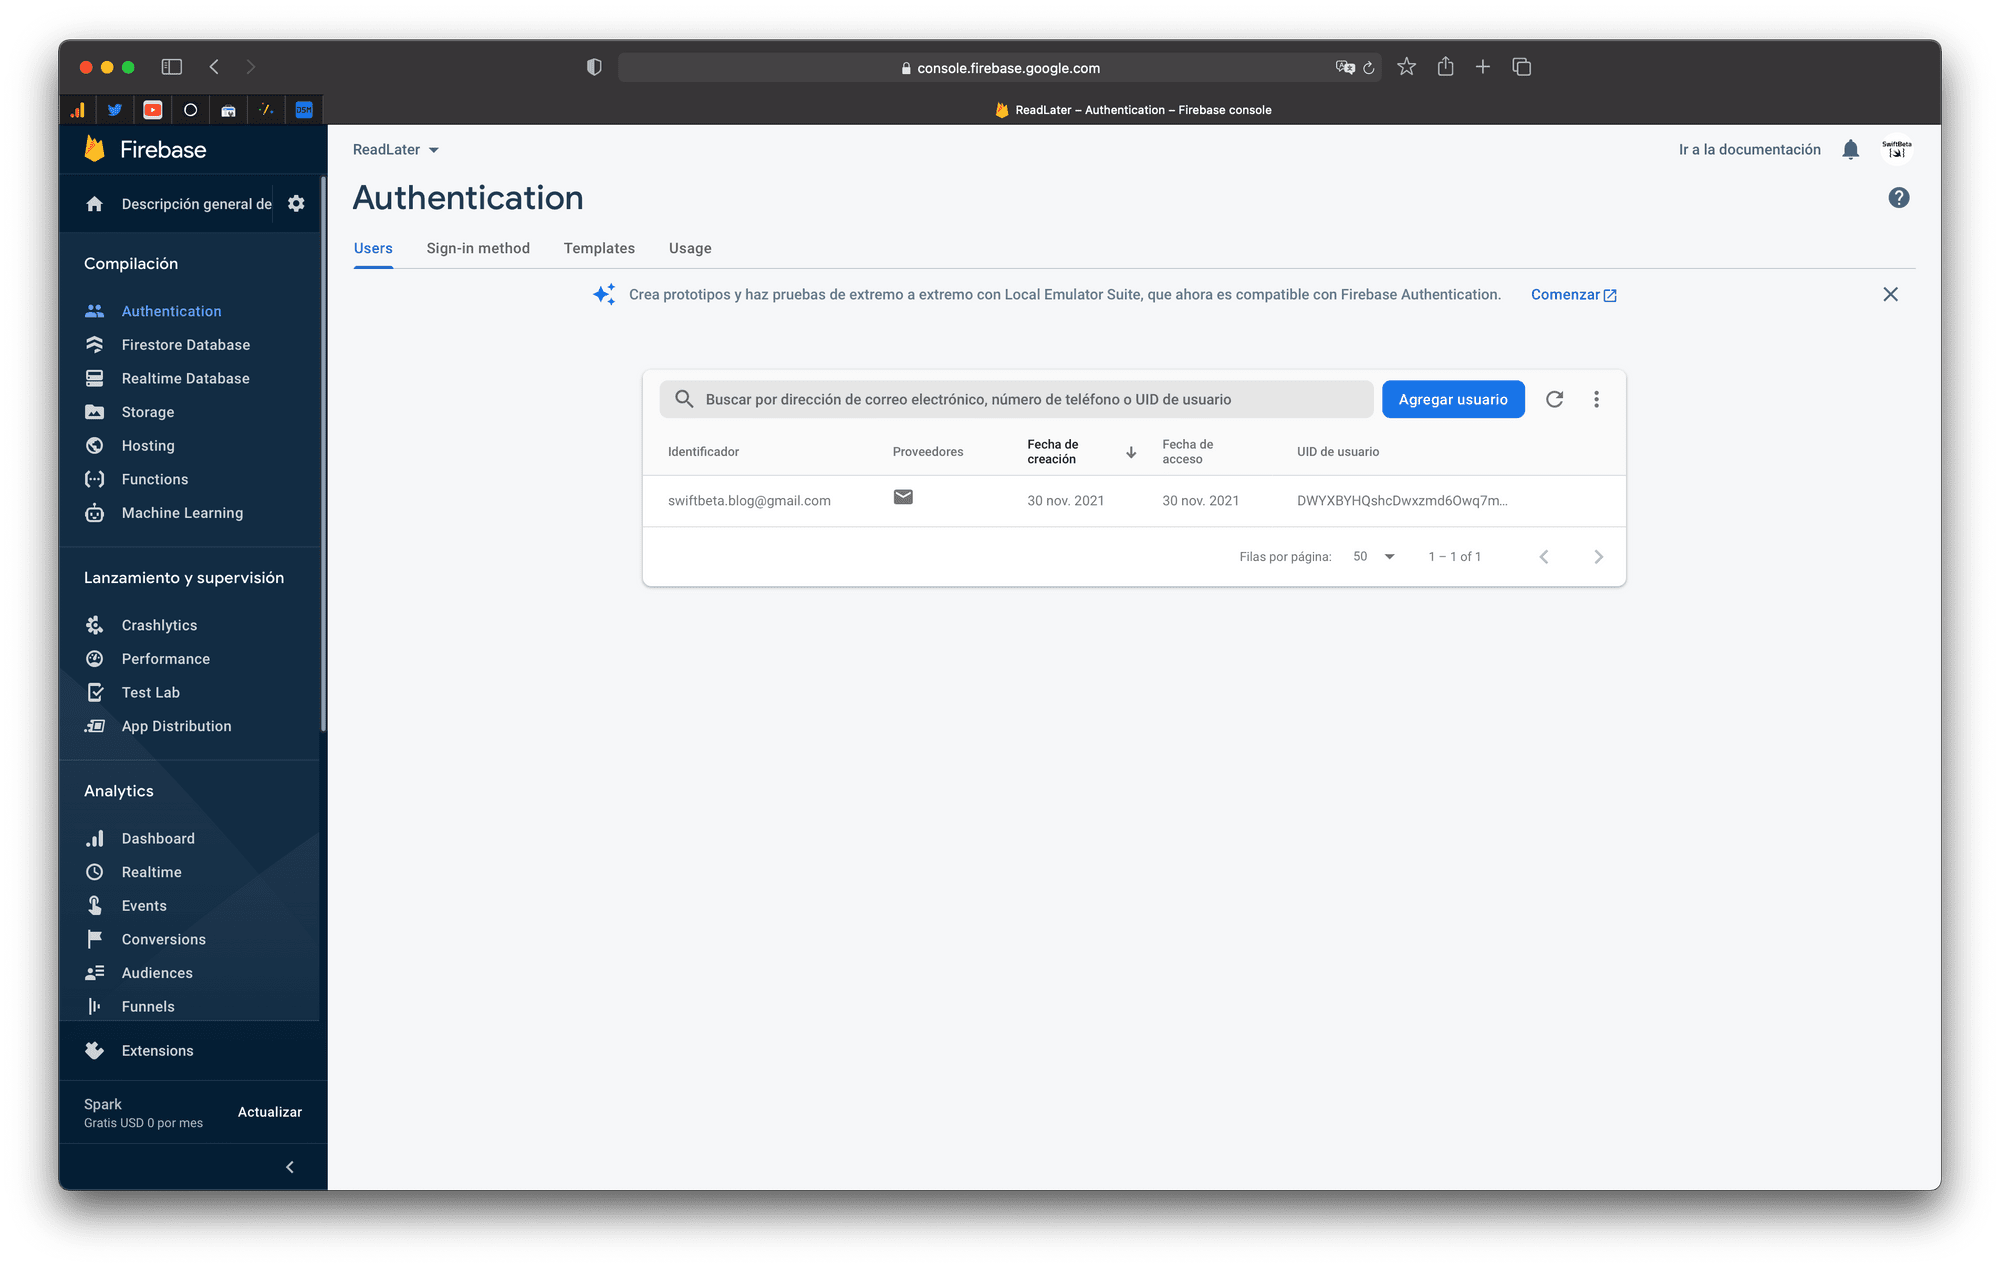 Comprobamos que tenemos nuestro user registrado en Firebase (con Email y Password)